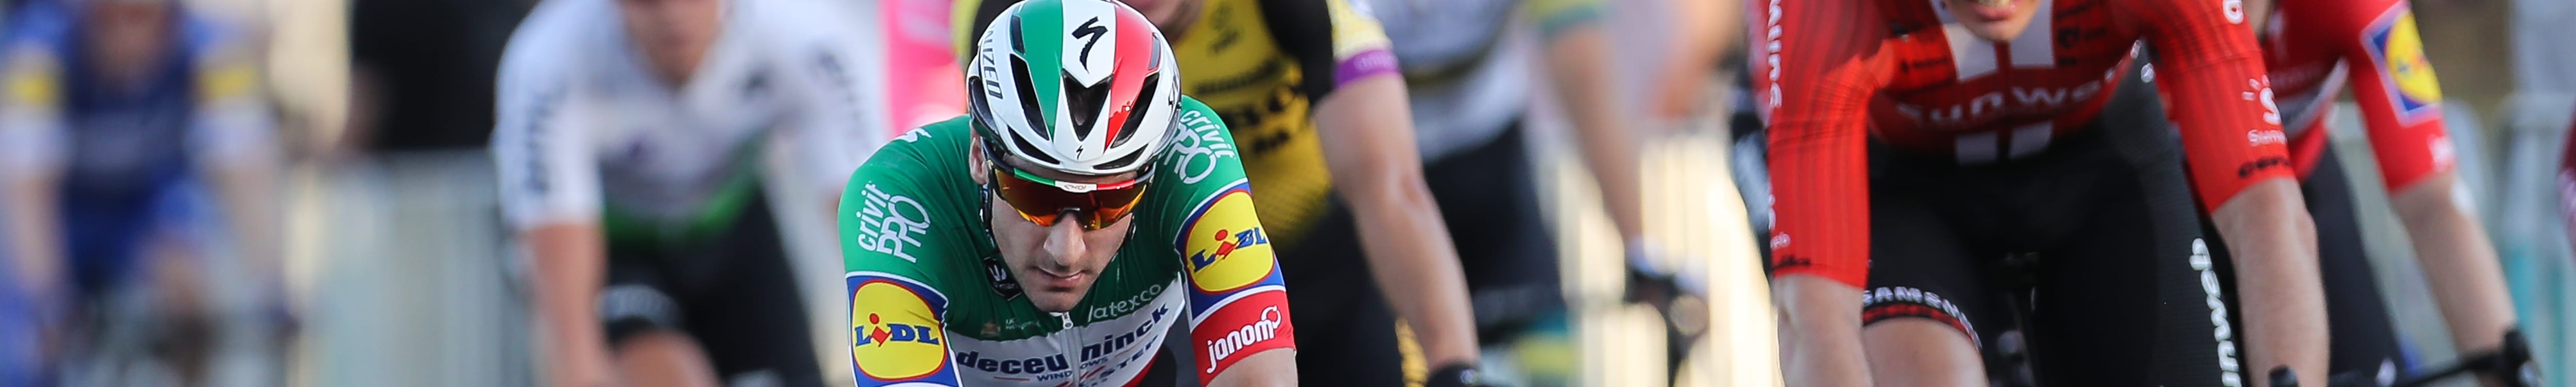 Giro d'Italia 2019, tappa 2: scatta l'ora di Viviani?